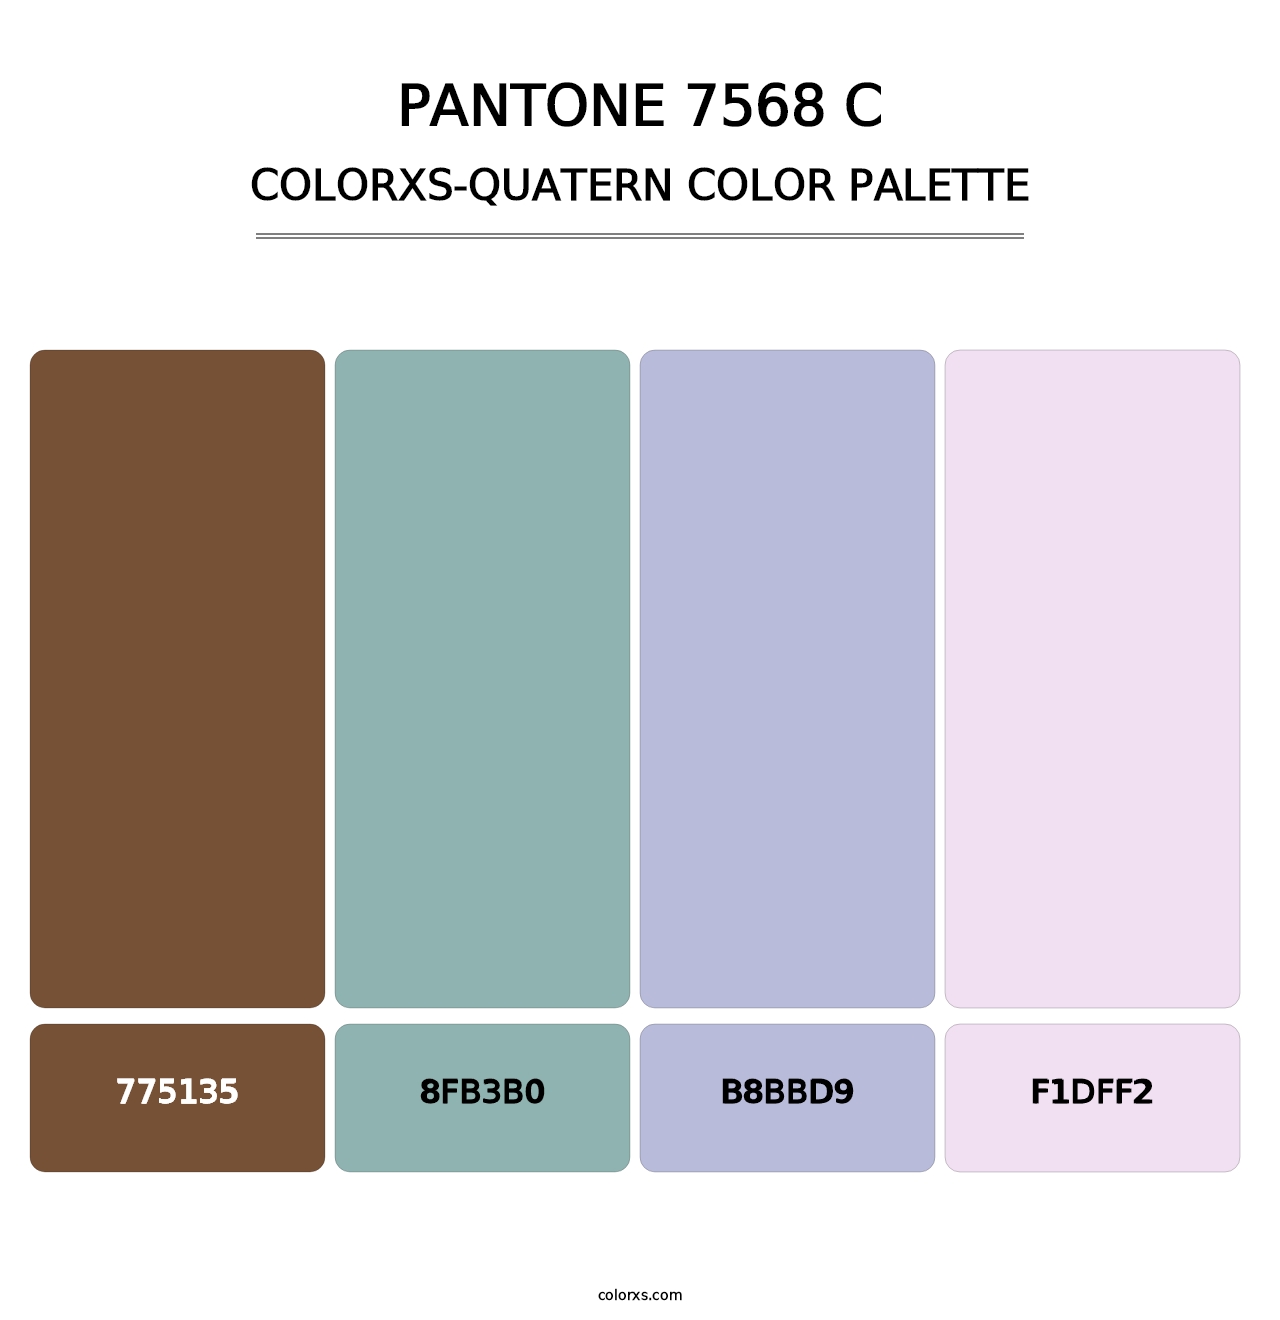 PANTONE 7568 C - Colorxs Quatern Palette